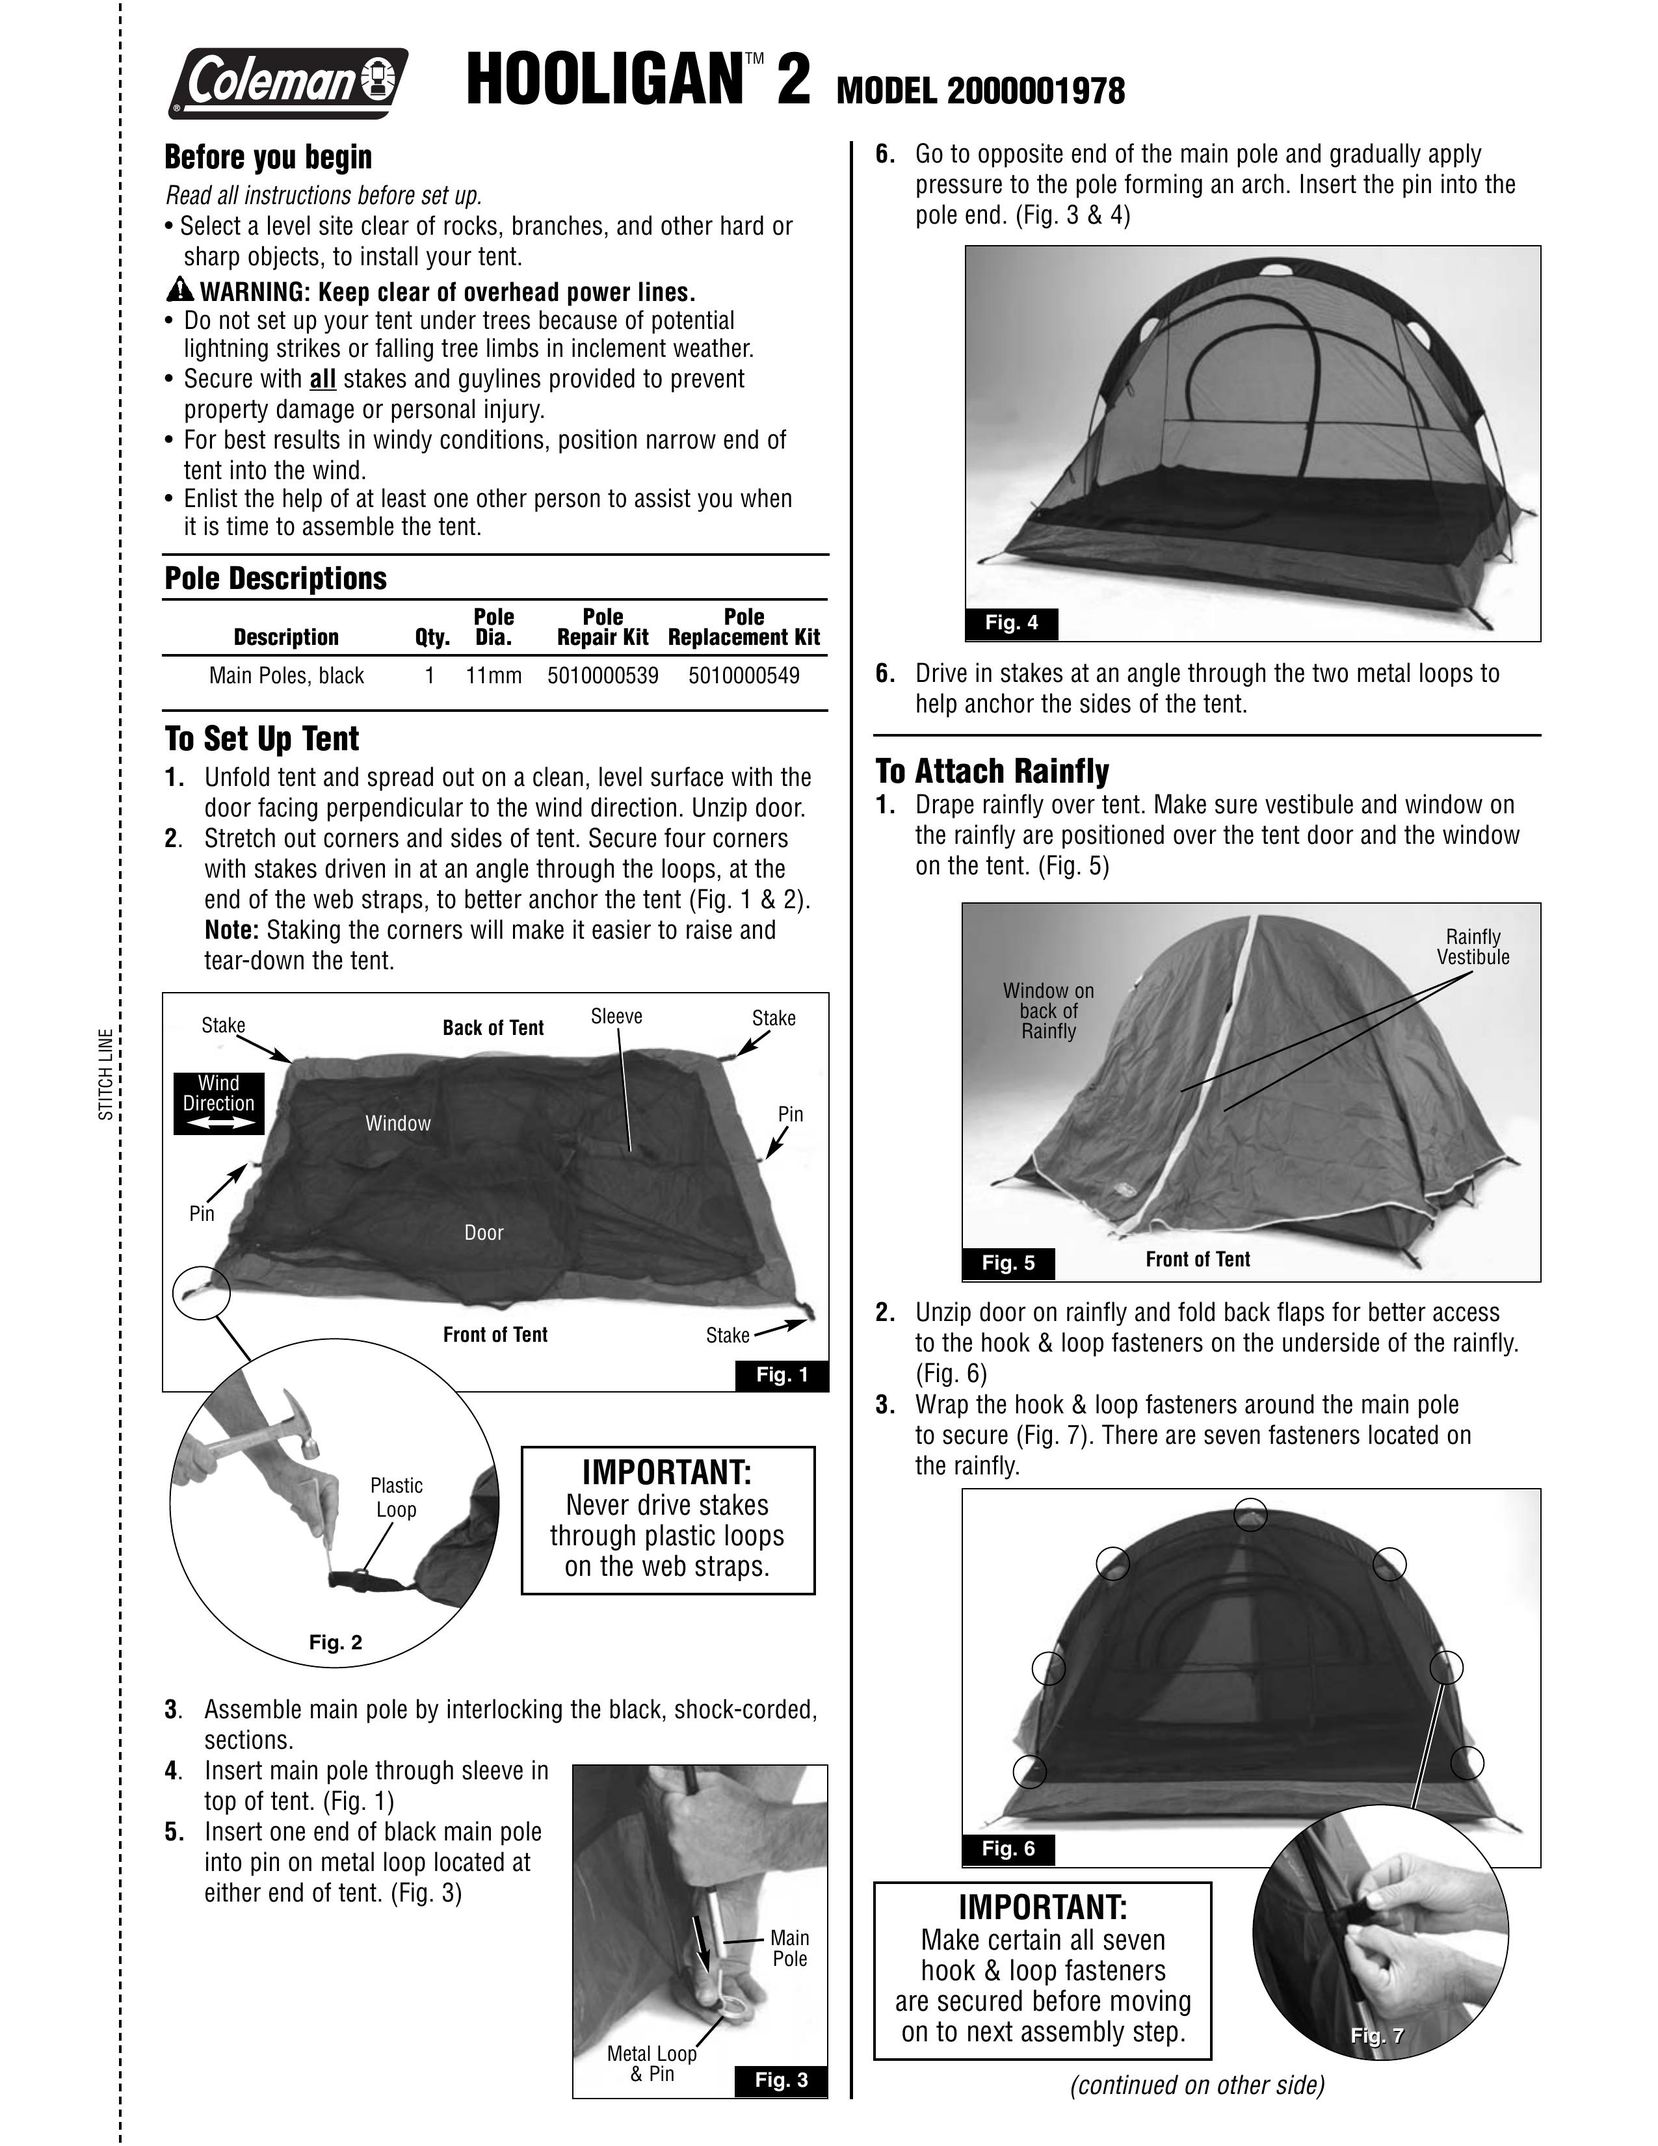 Coleman 2000001978 Tent User Manual